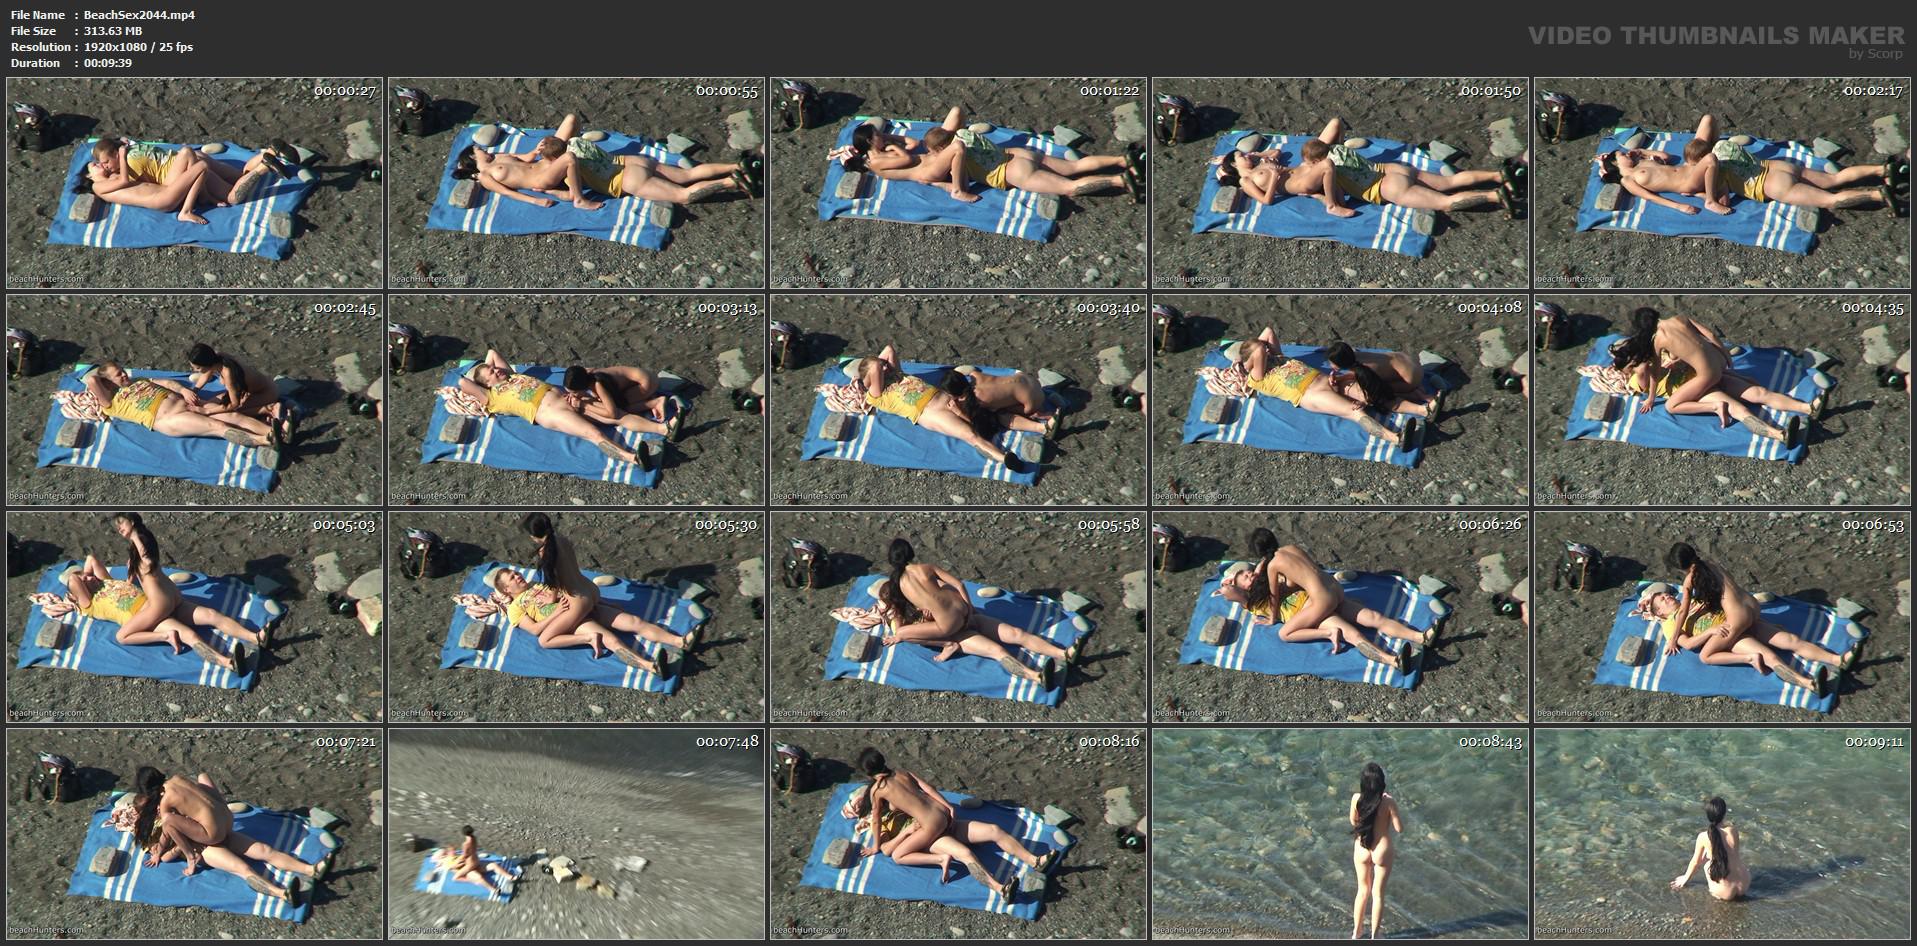 Вуайеристский секс в общественных местах на пляже